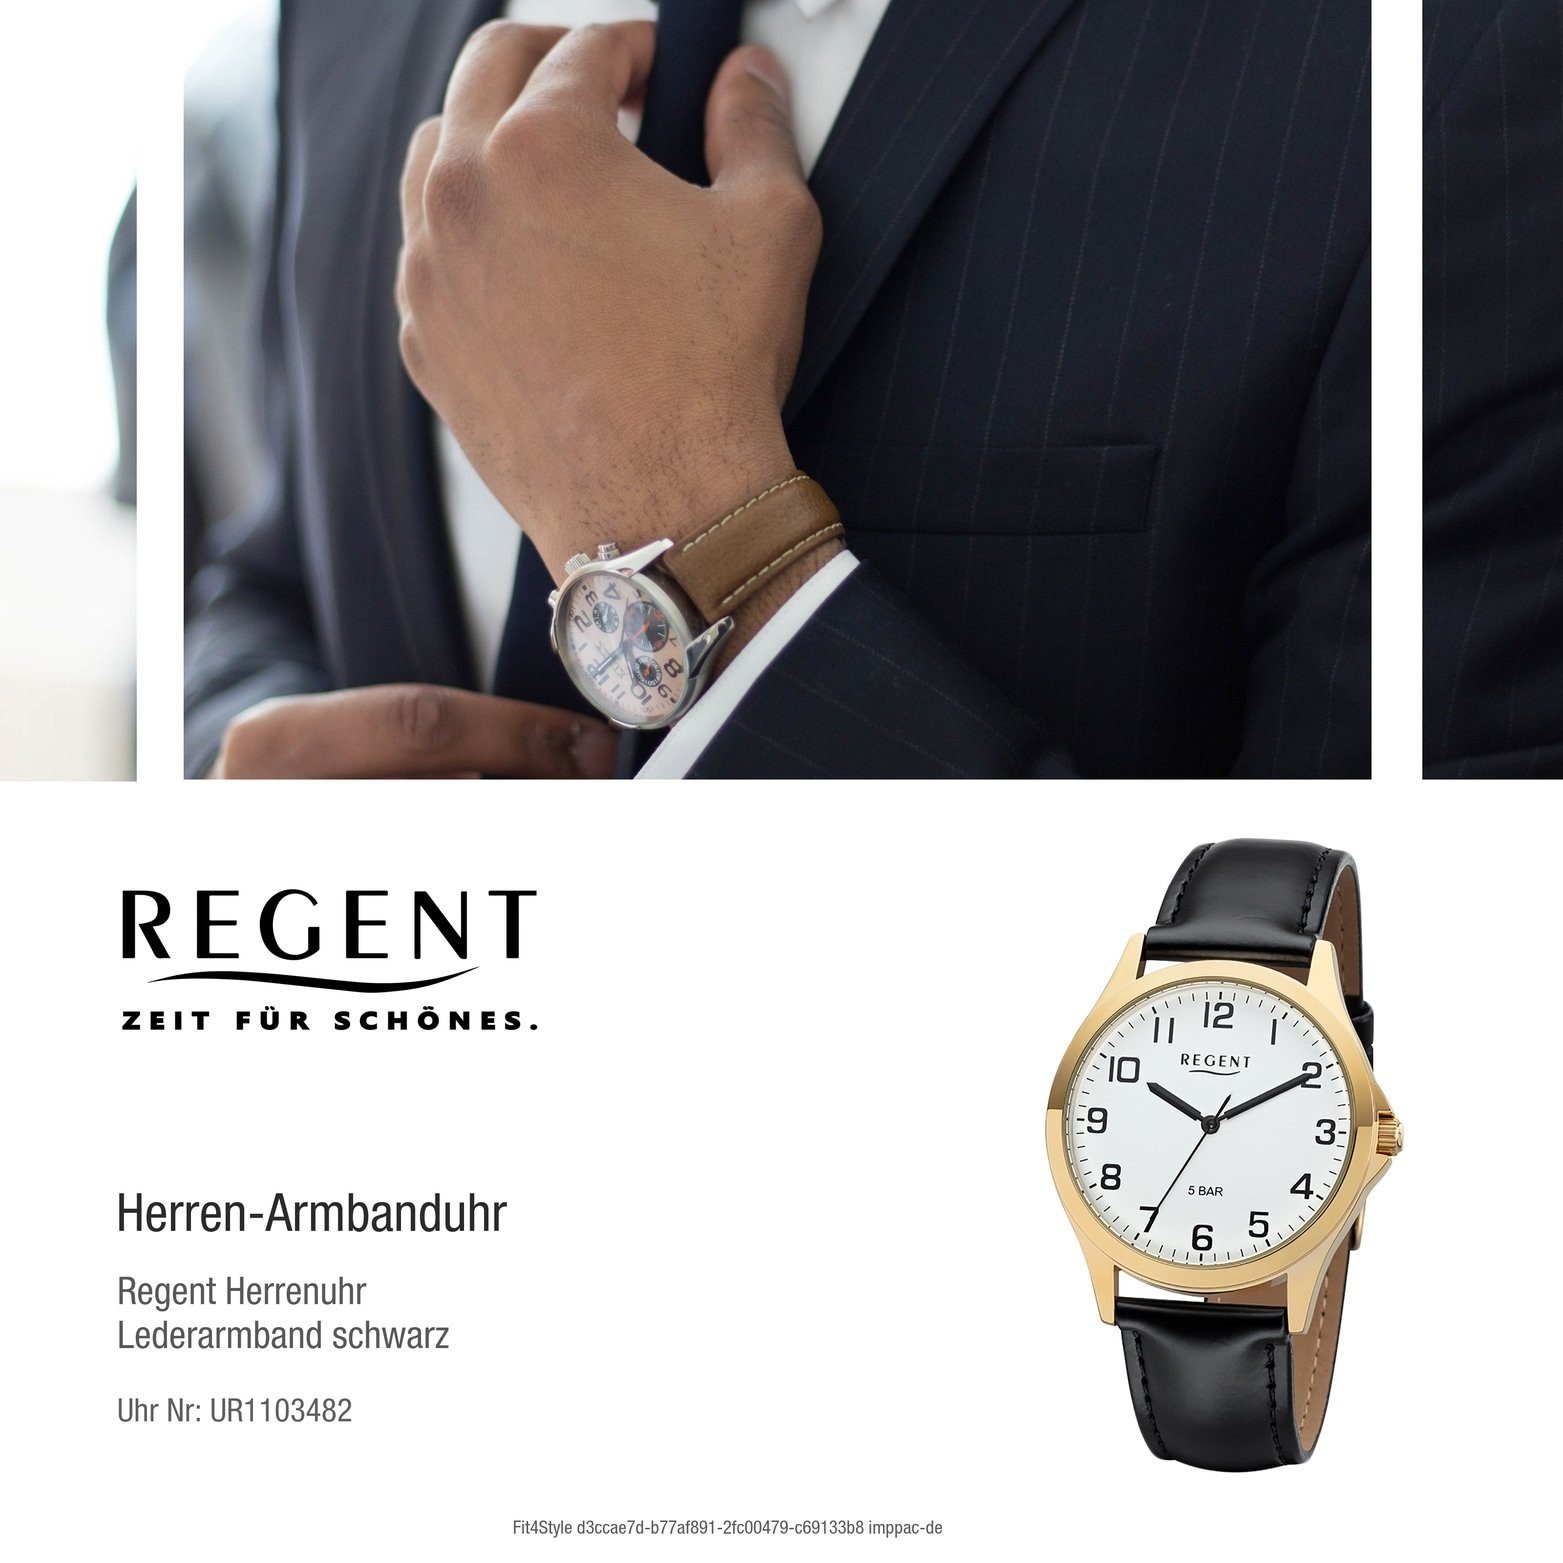 Uhr Regent Regent Leder 1103482 rundes 39mm) schwarz, Gehäuse, Lederarmband Herren Herrenuhr mittel Analog, Quarzuhr (ca.